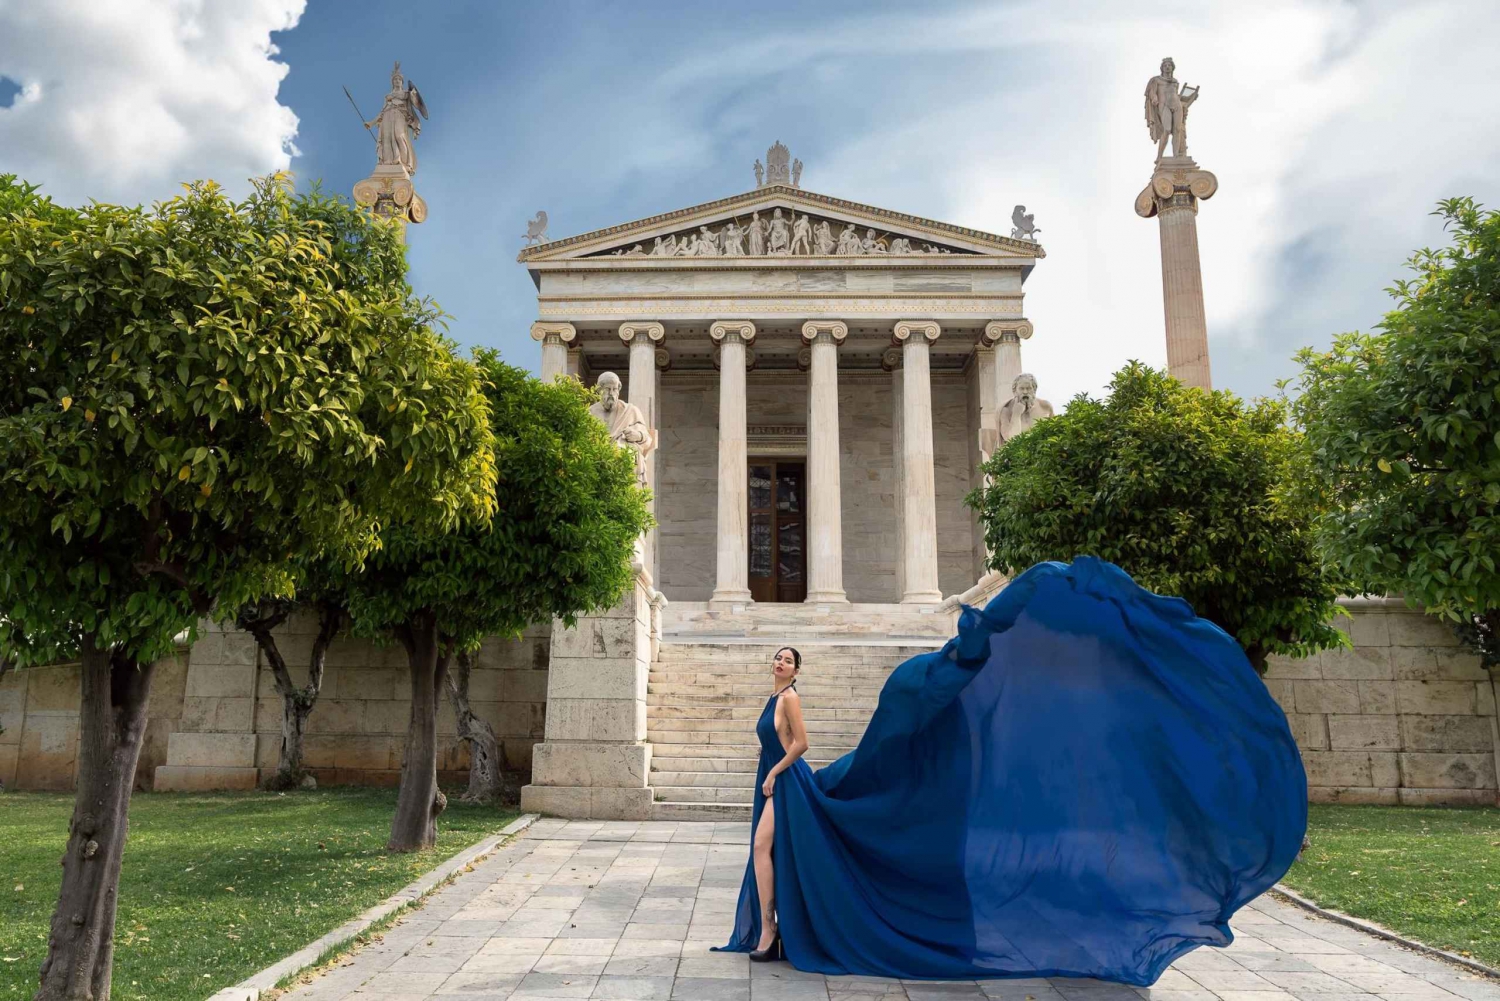 Athene: Vliegende Jurk Fotoshoot 'Express pakket'